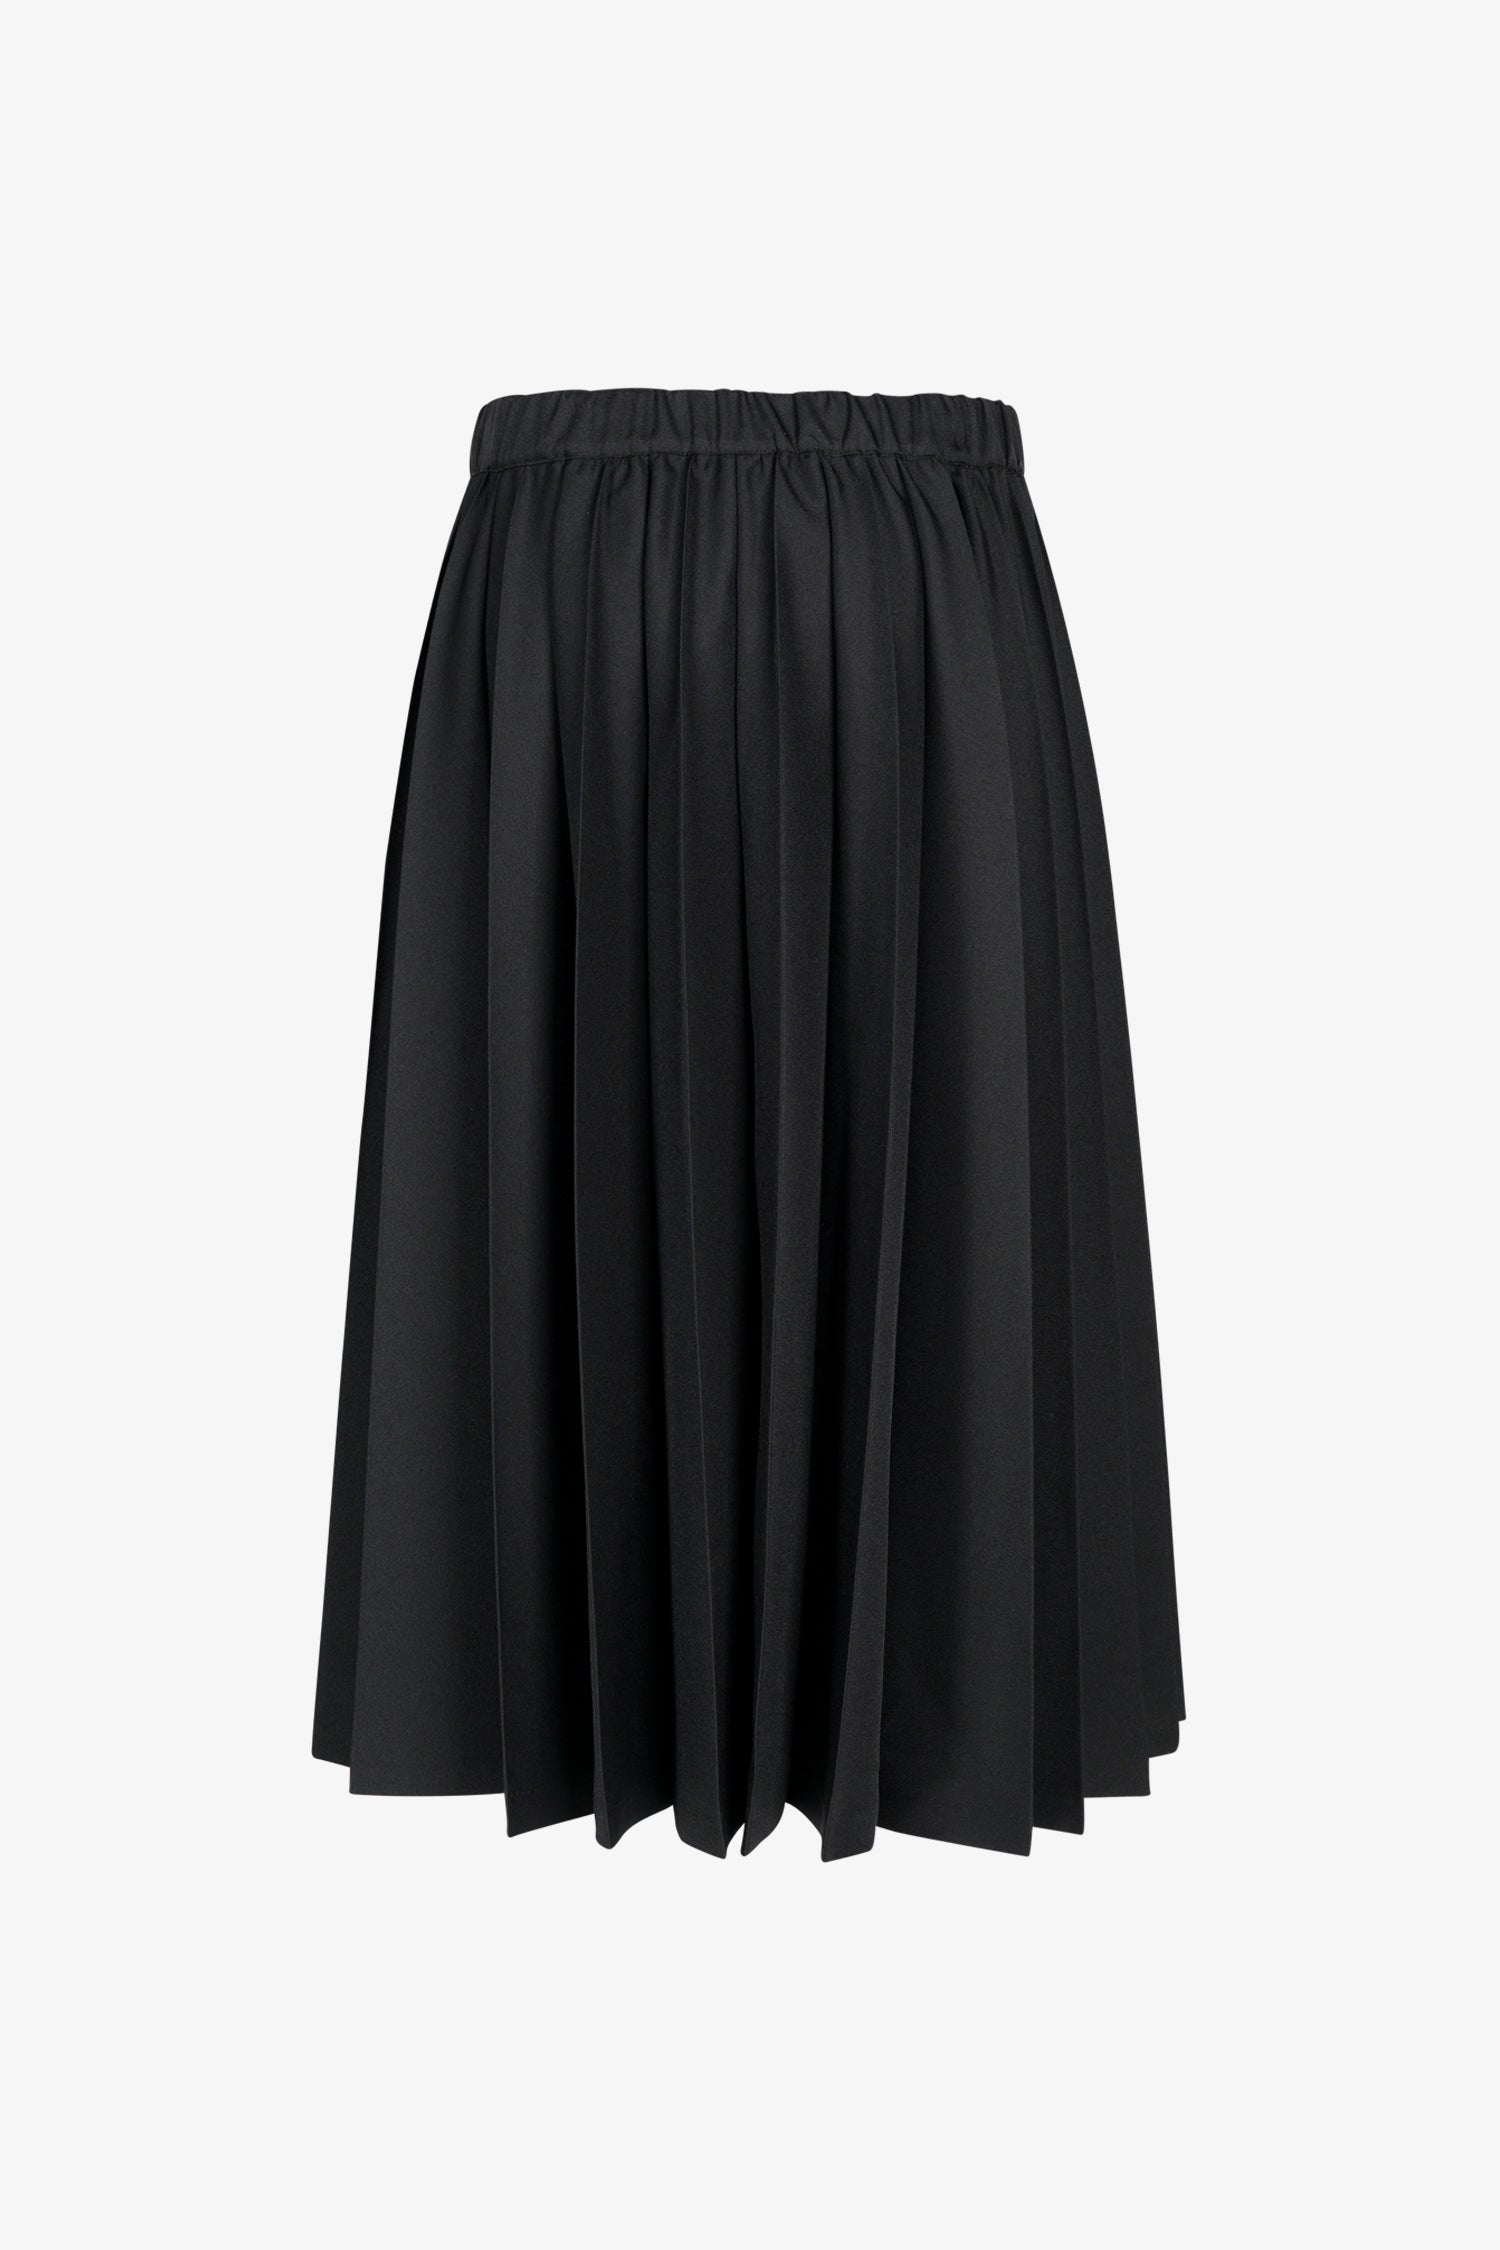 Selectshop FRAME - COMME DES GARÇONS BLACK Accordion Pleated Skirt Bottoms Dubai